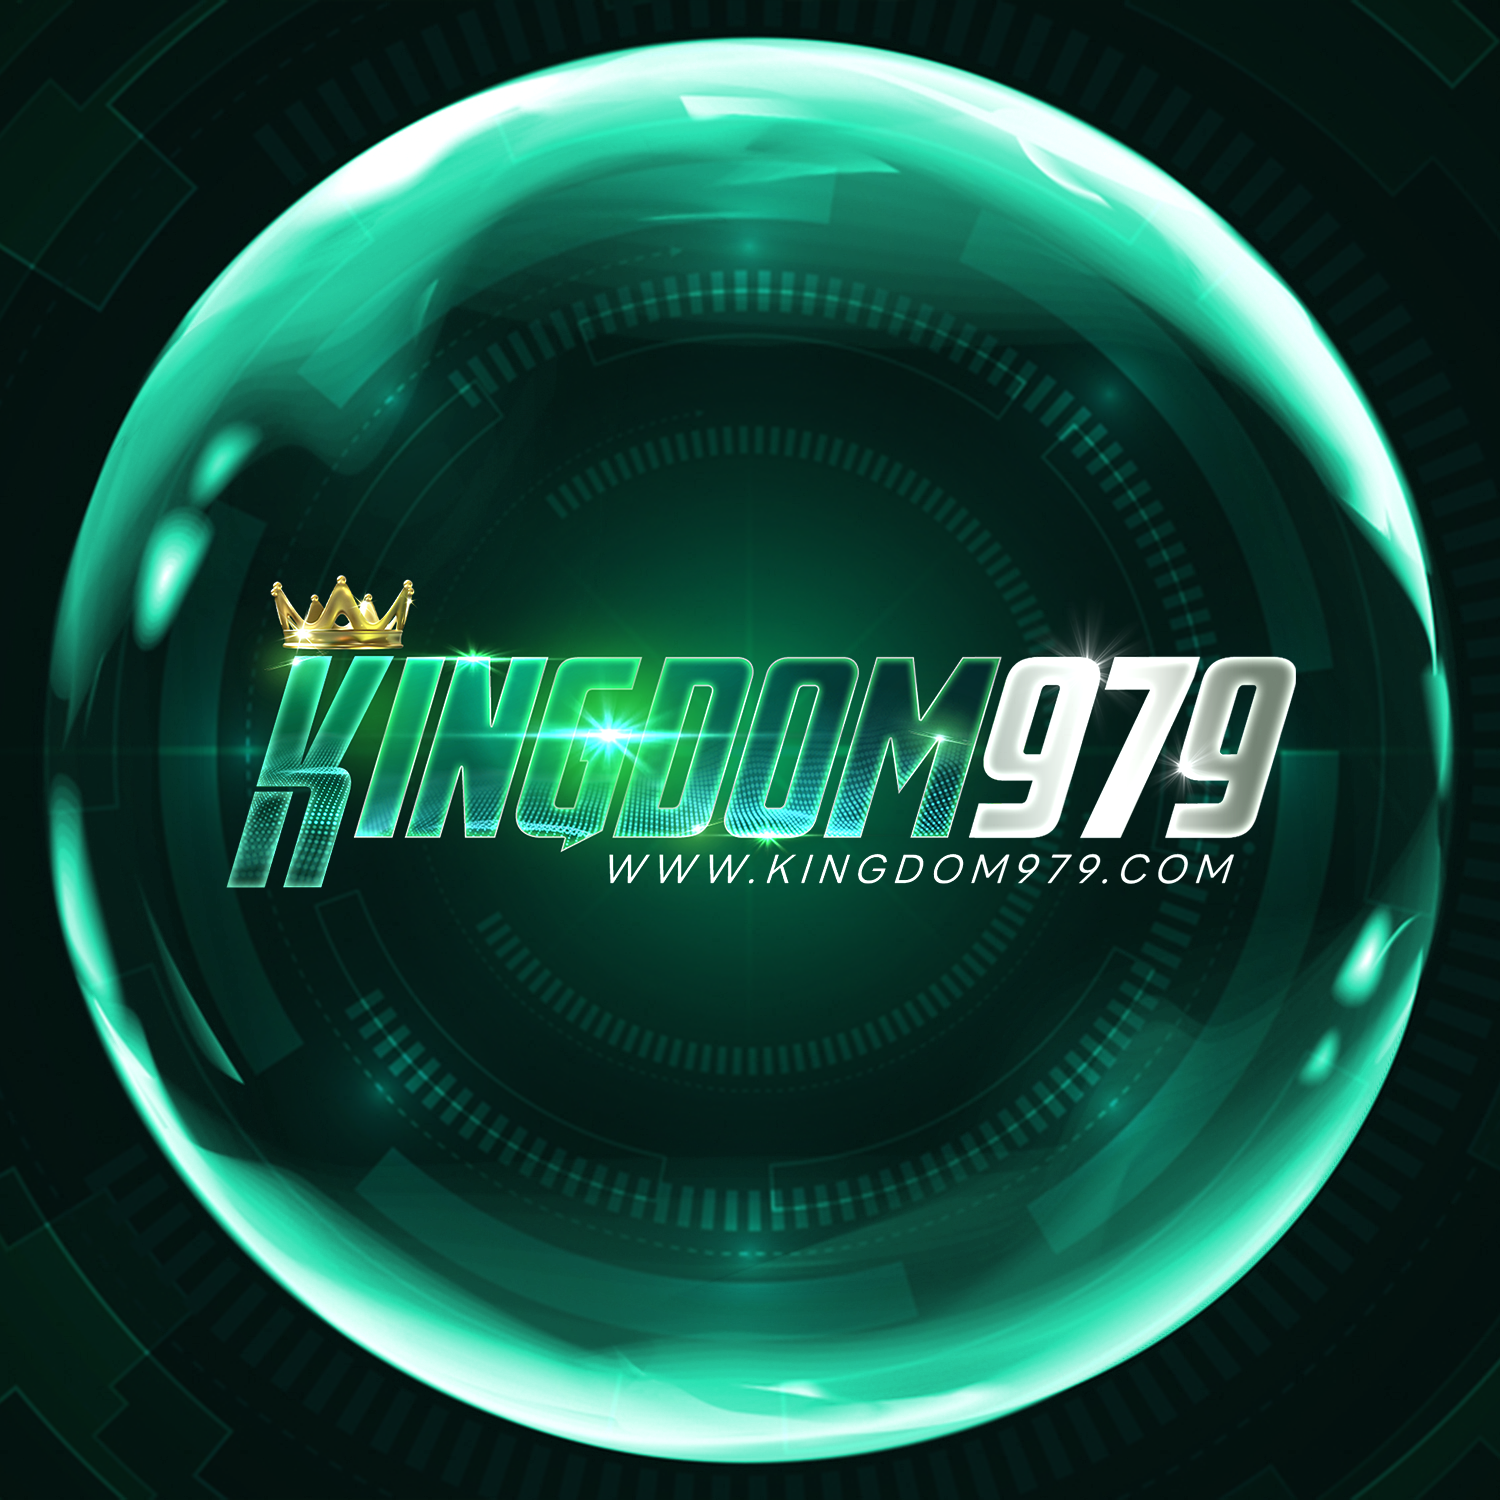 logo kingdom979